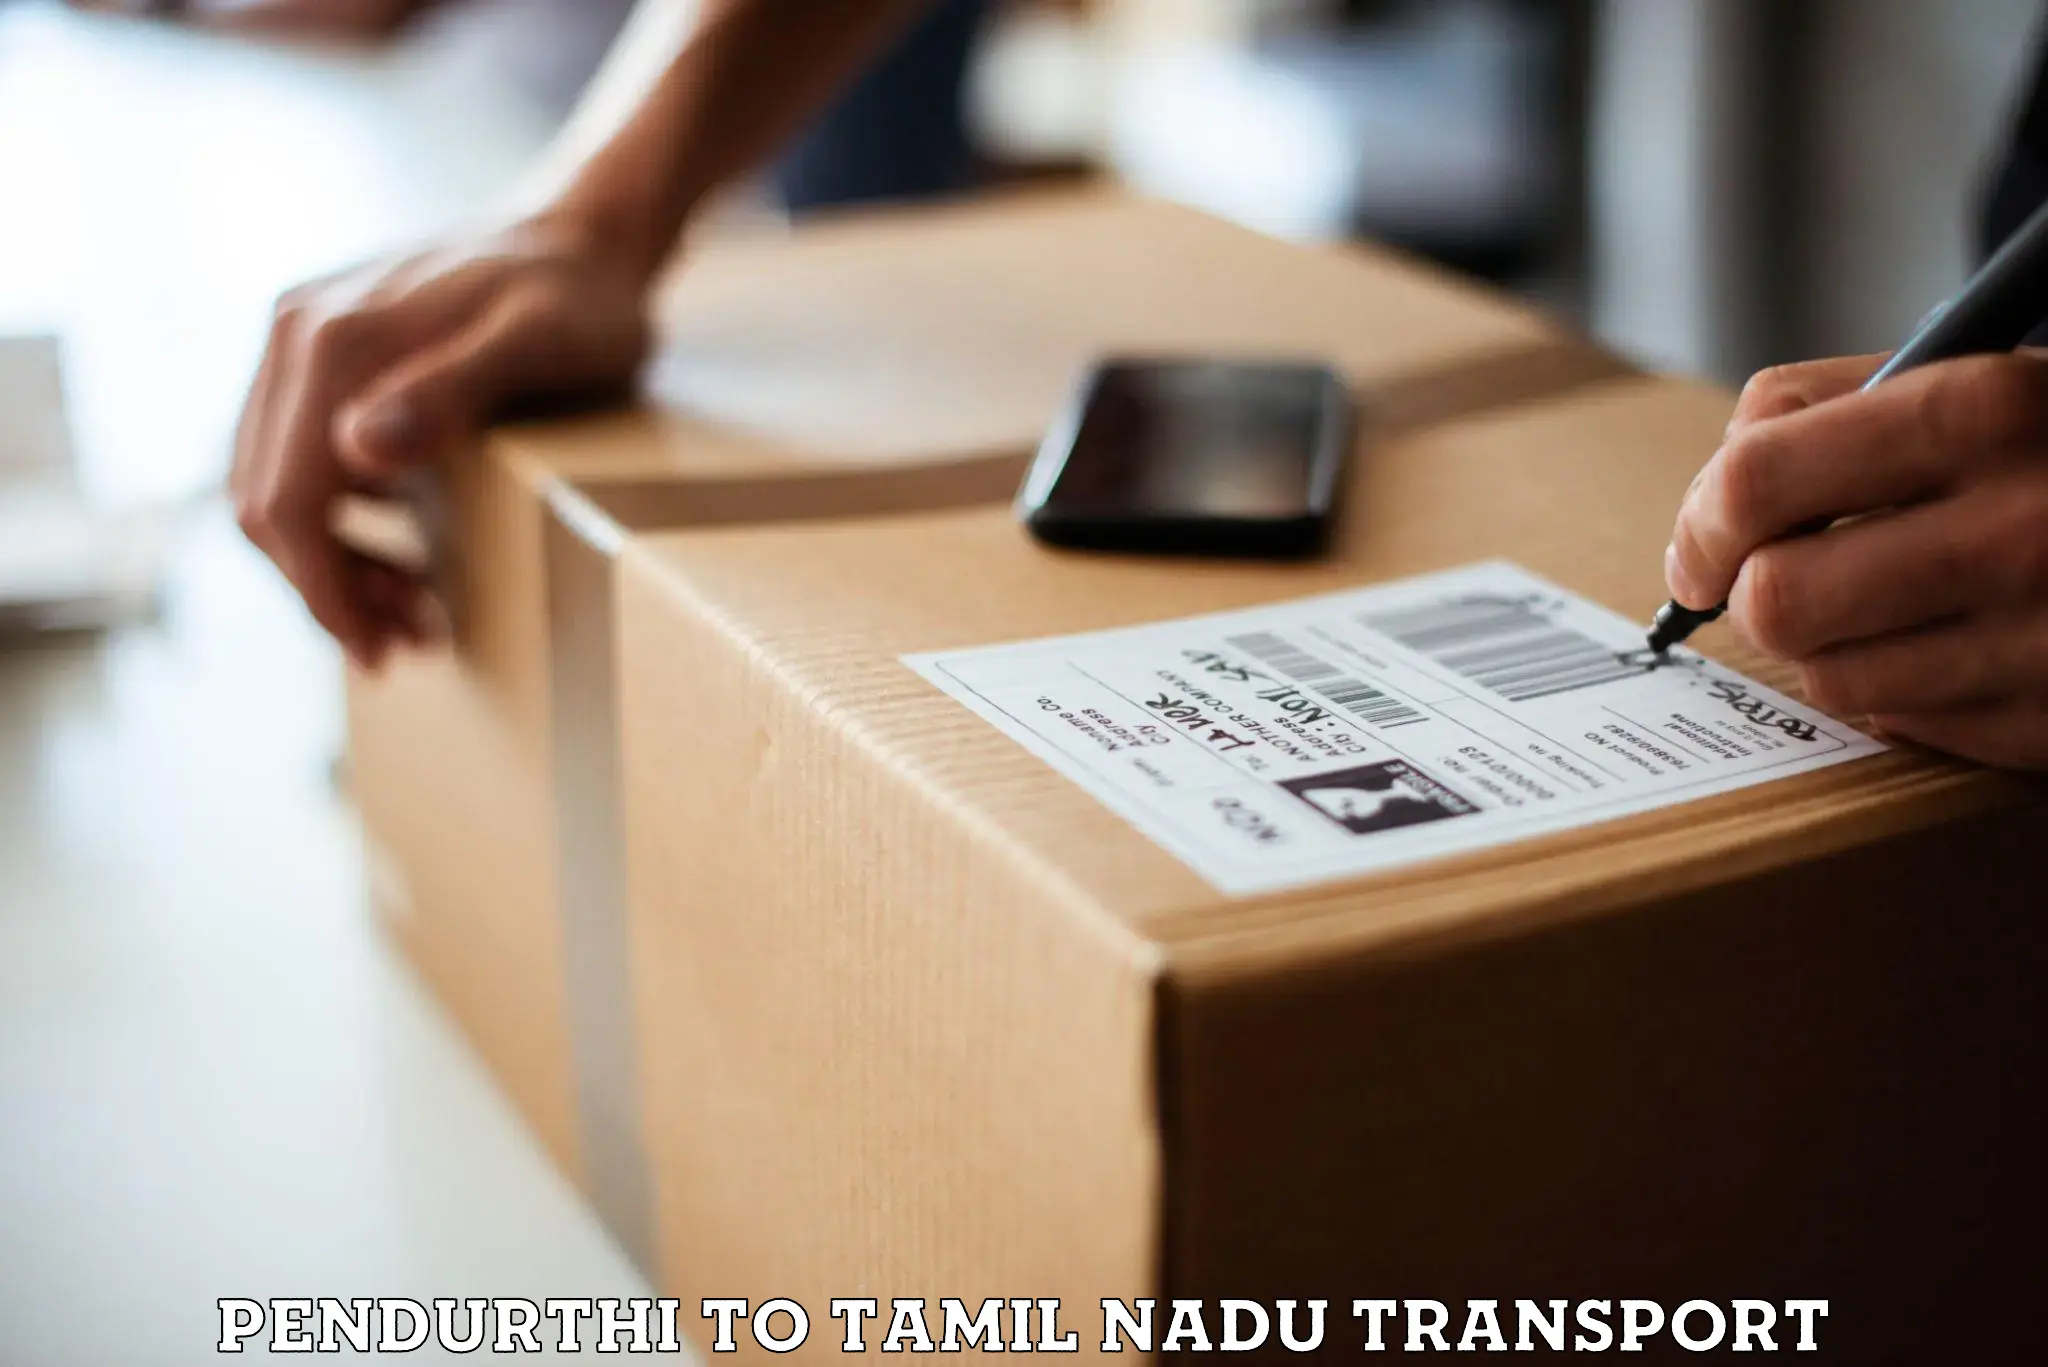 Commercial transport service Pendurthi to Vickramasingapuram